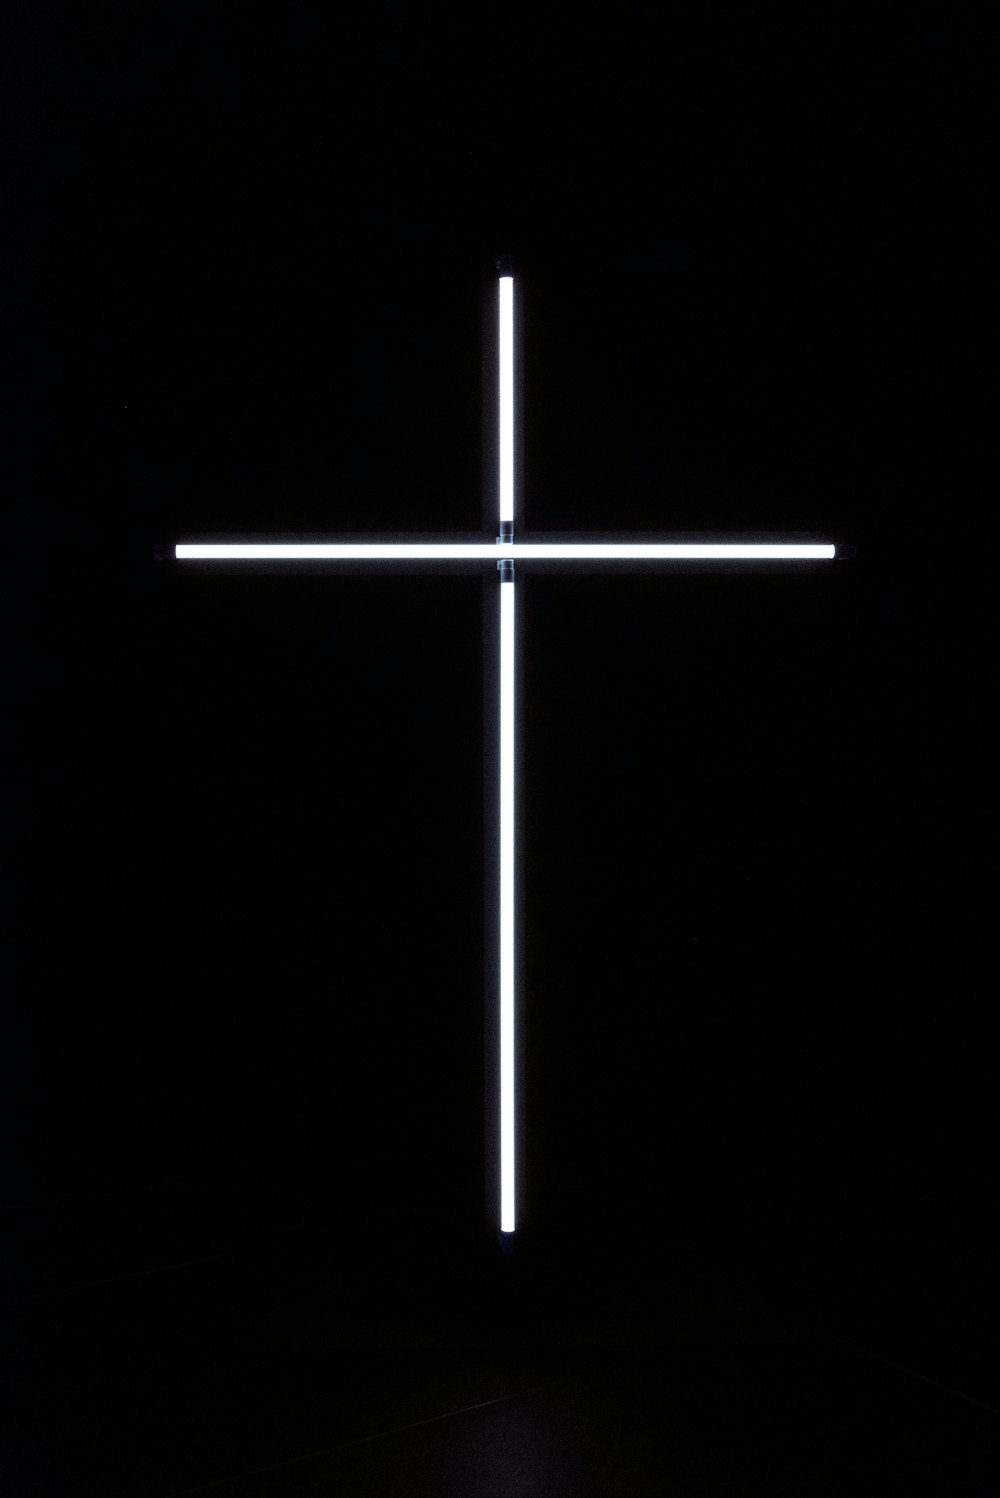 어둠 속에서 밝혀진 십자가